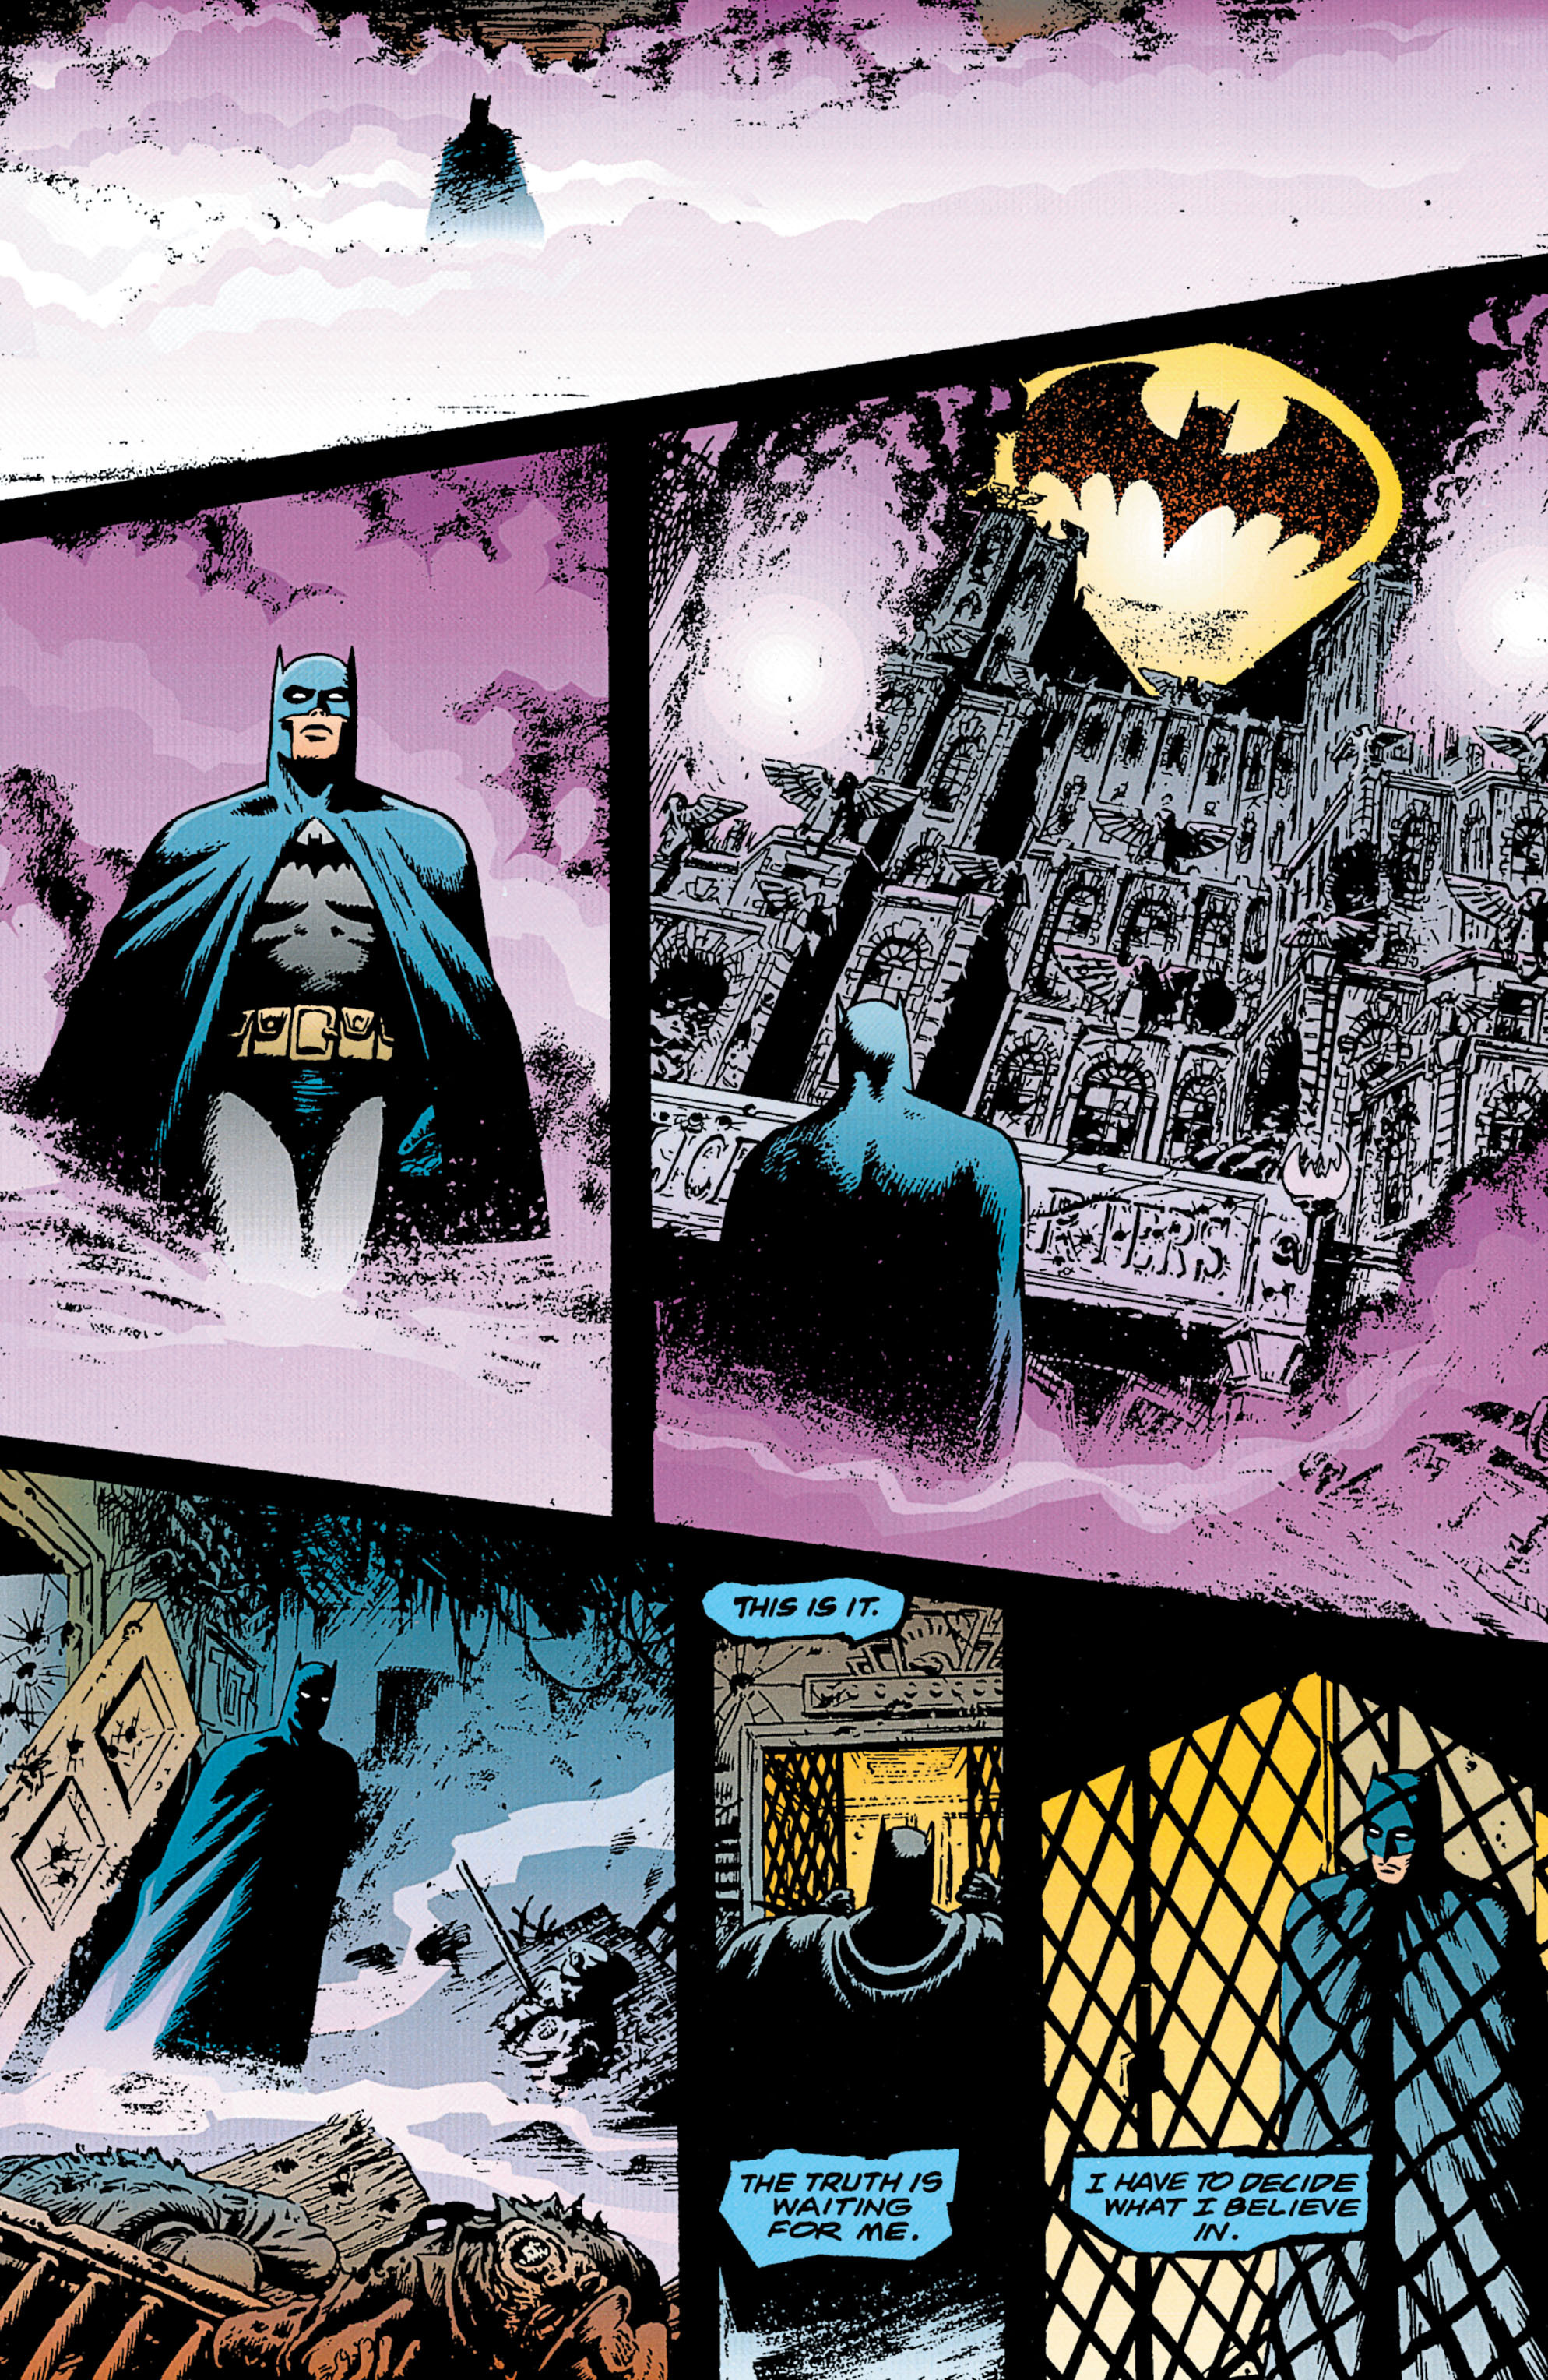 Манга ограниченное время темный рыцарь 49. Темная Мультивселенная сказания Бэтмен падение рыцаря. Бэтмен темный рыцарь комикс. Бэтмен легенды темного рыцаря образы. Бэтмен легенды о темном рыцаре.